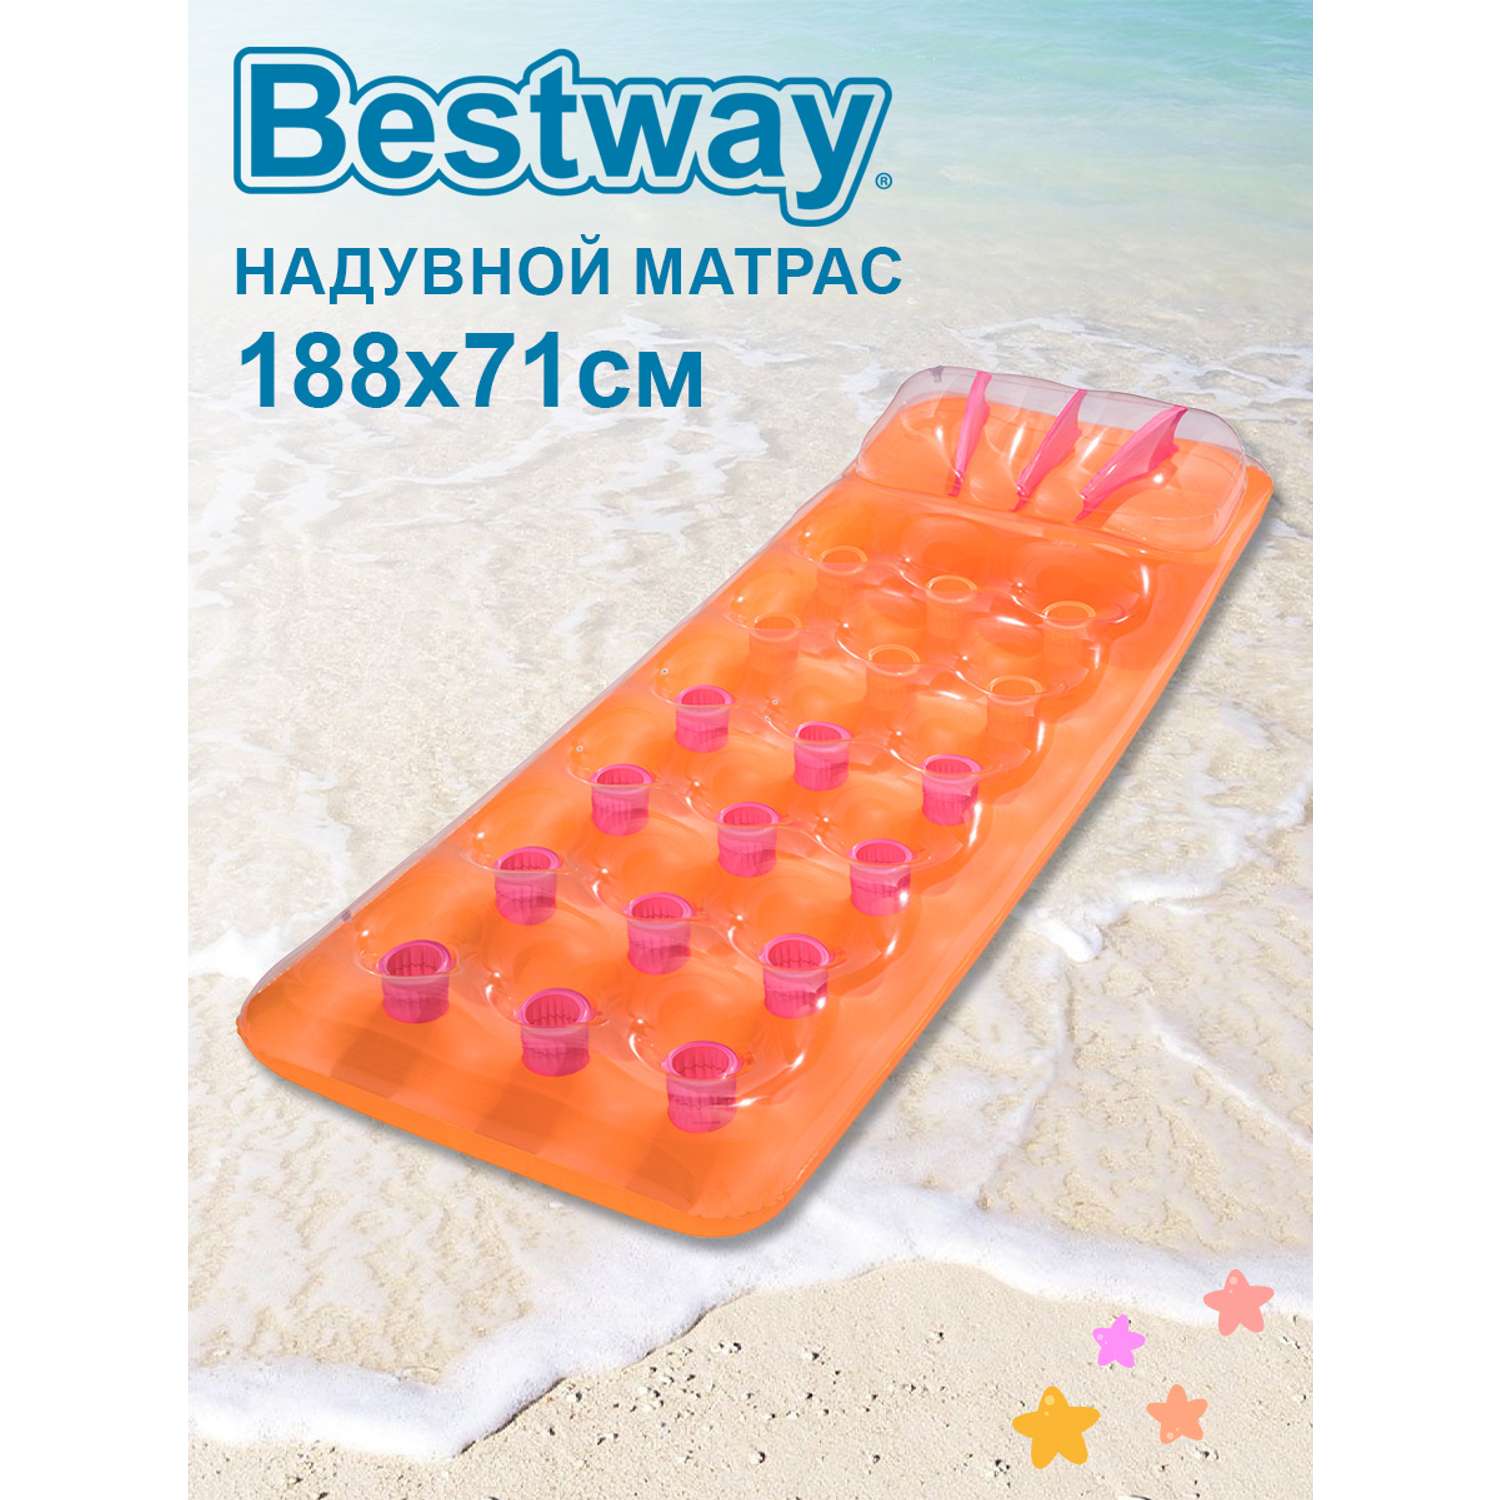 Матрас надувной BESTWAY для плавания 118х87.5см 43015-o оранжевый - фото 1